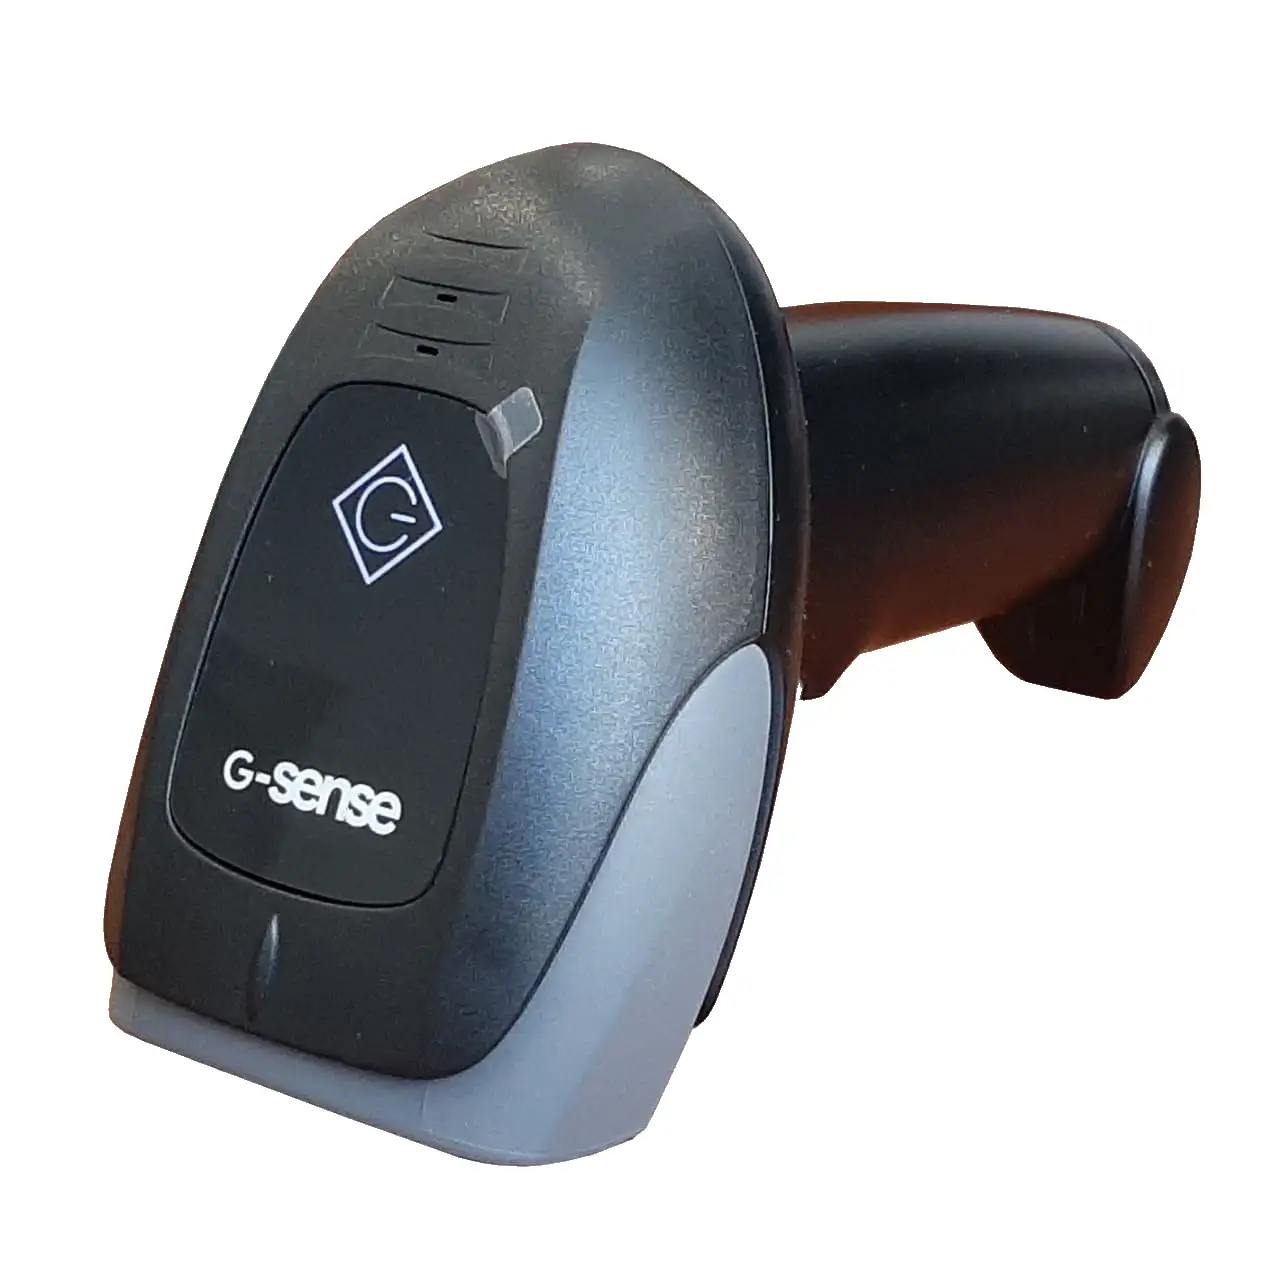 картинка Беспроводной сканер ШК G-SENSE IS1401R 2D Bluetooth, 2.4Ghz, USB, черный от ККМ.ЦЕНТР